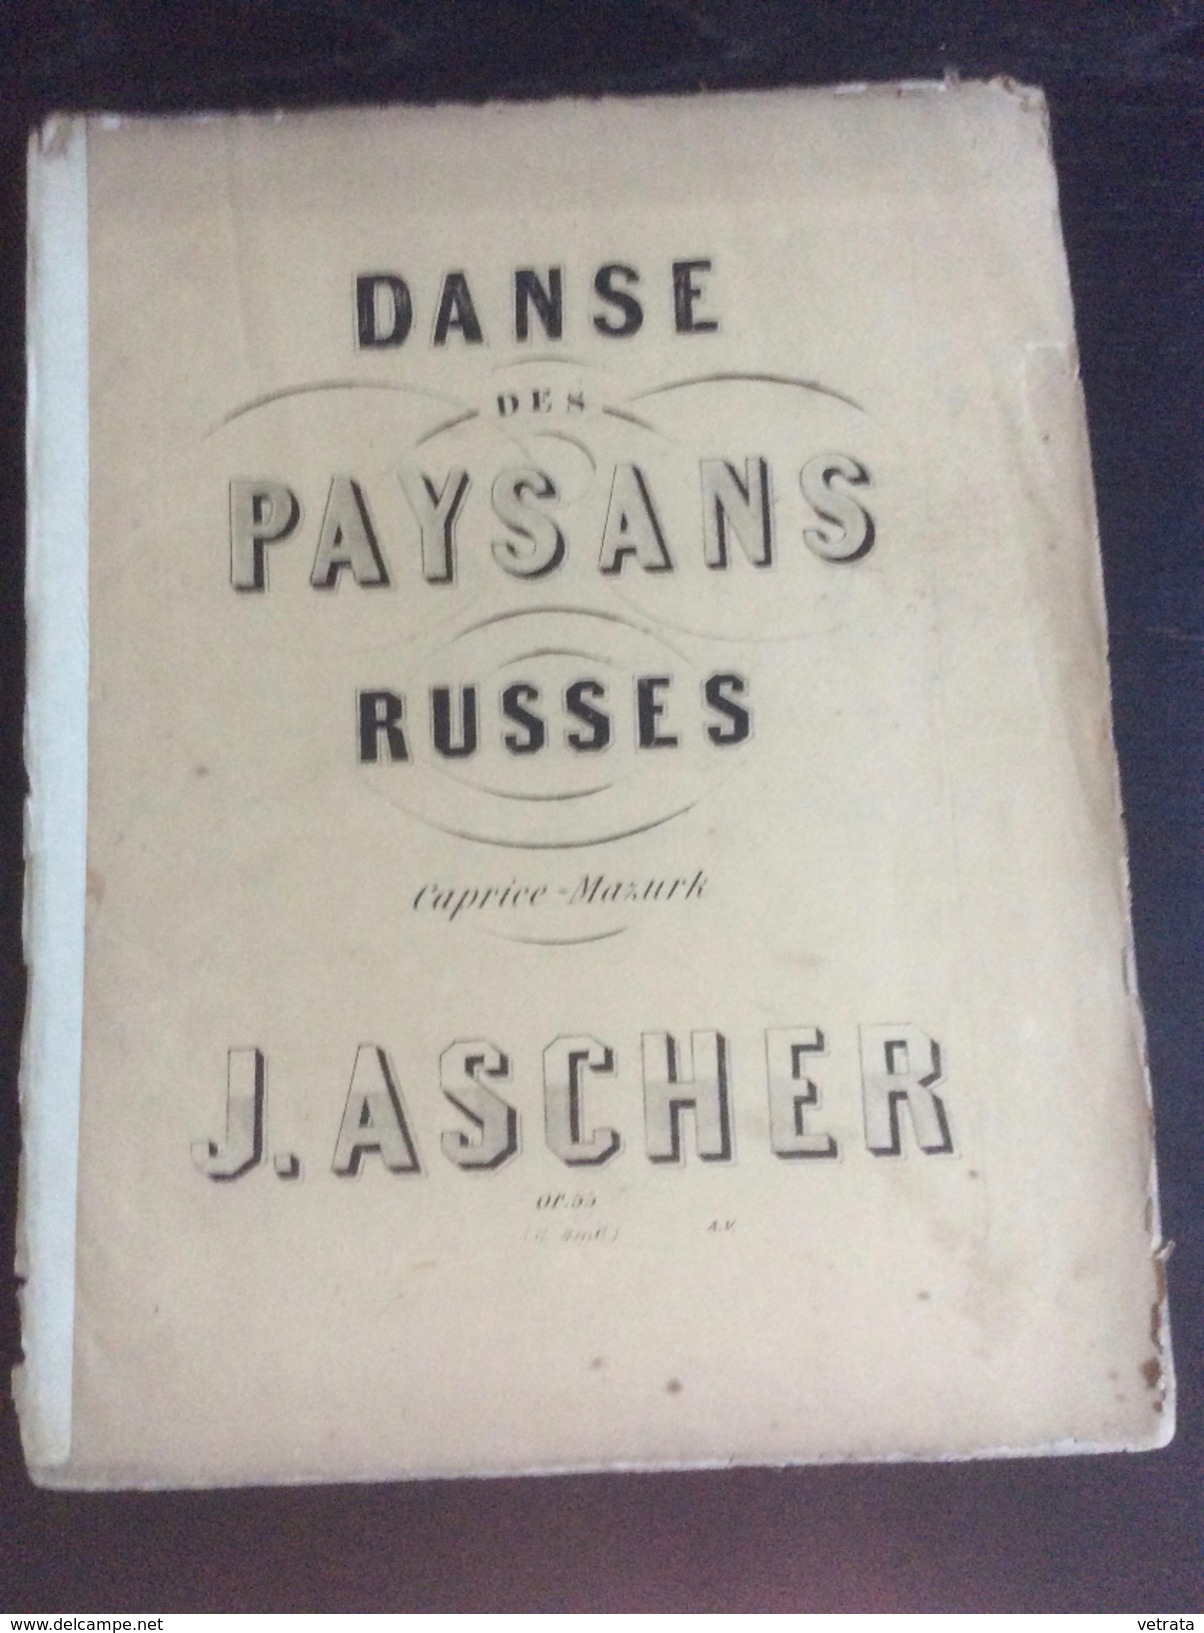 Partition : Danse Des Paysans Russes, J. Ascher (Lemoine Ed.- 5 Feuillets - Début Du Siècle Dernier - état Moyen) - Opéra